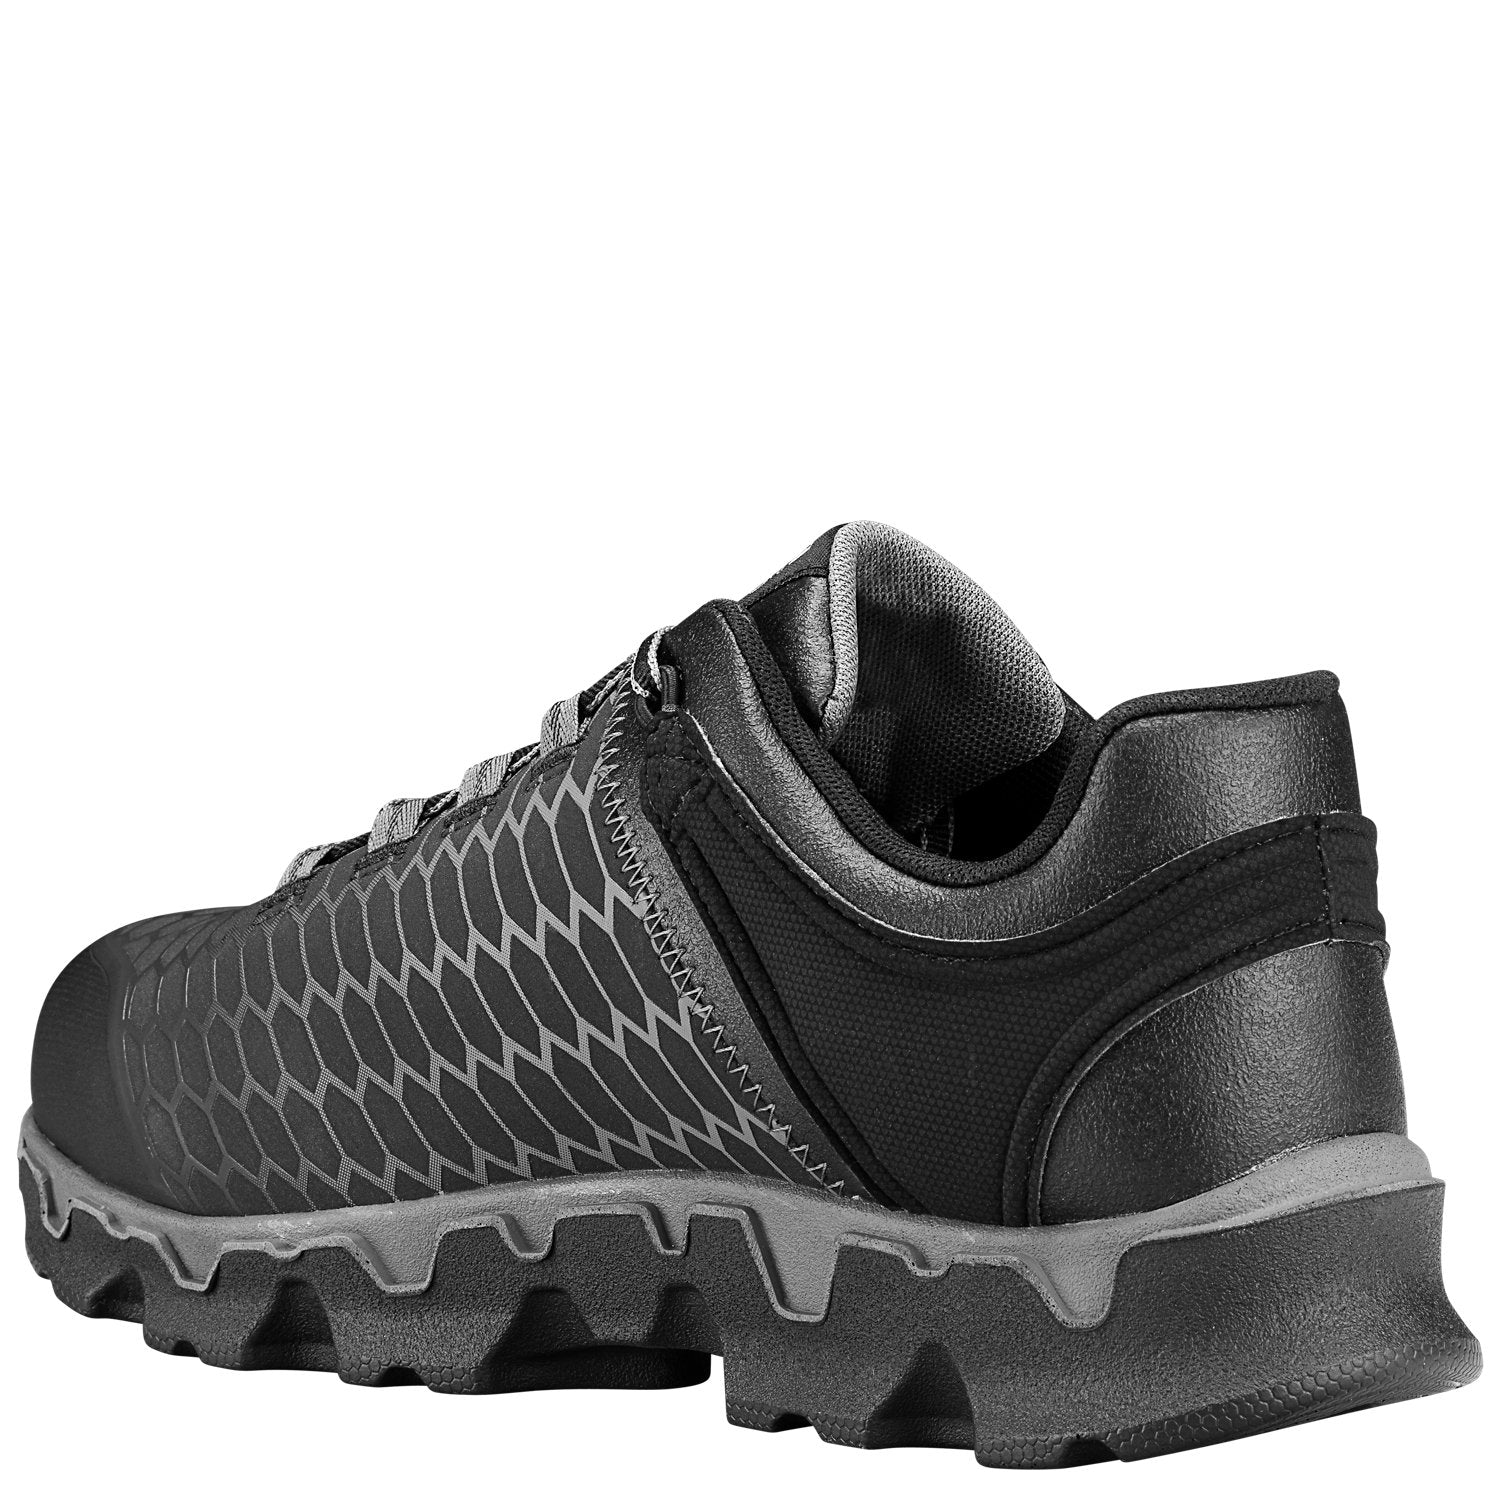 Timberland Powertrain Sport Al Black - Men's & Women's Footwear ...